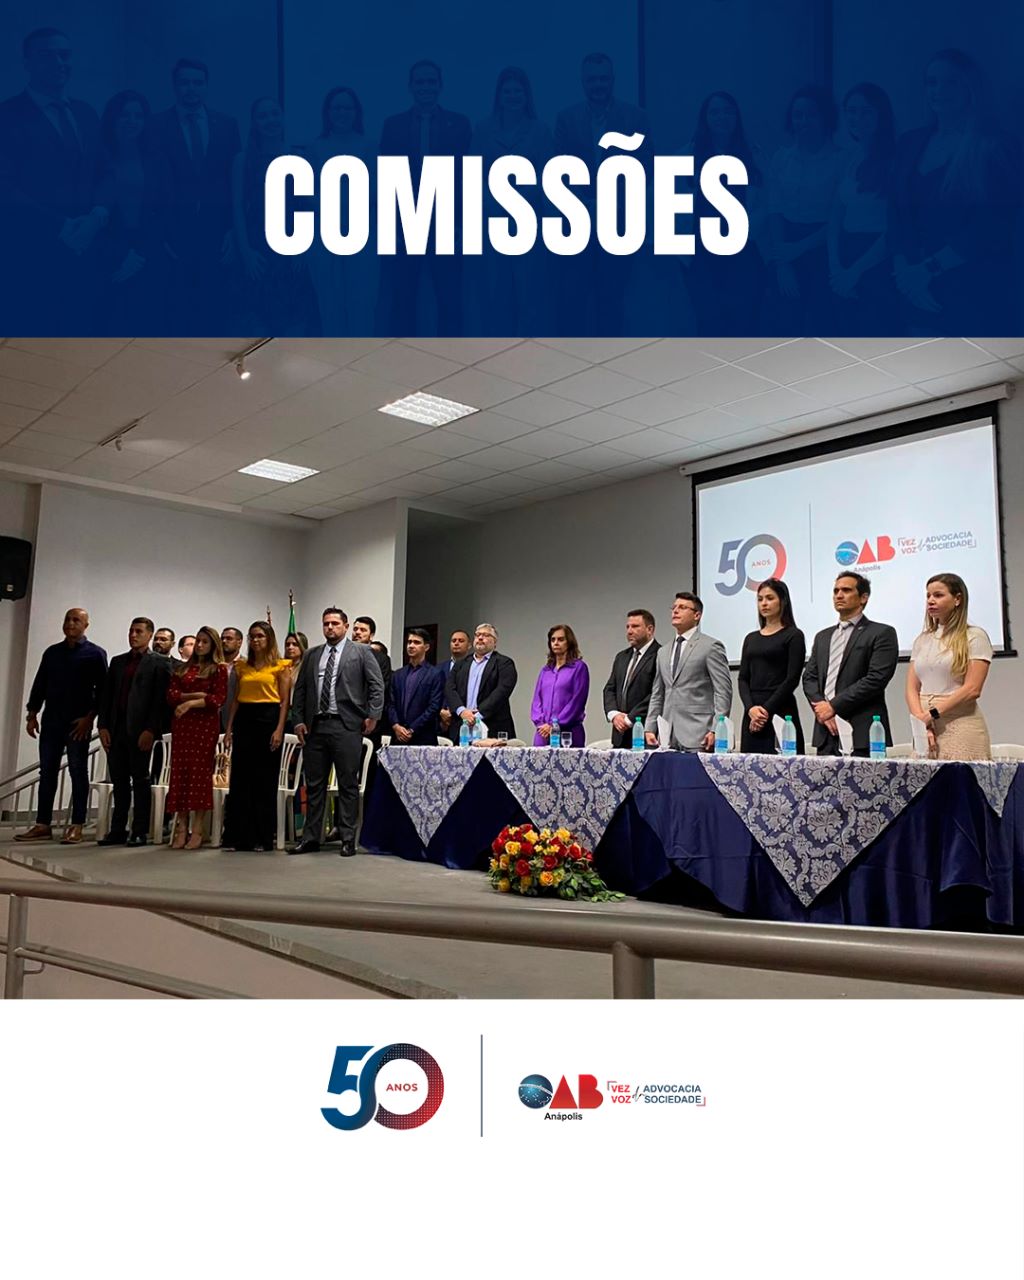 OAB Anápolis empossa 37 membros de comissões